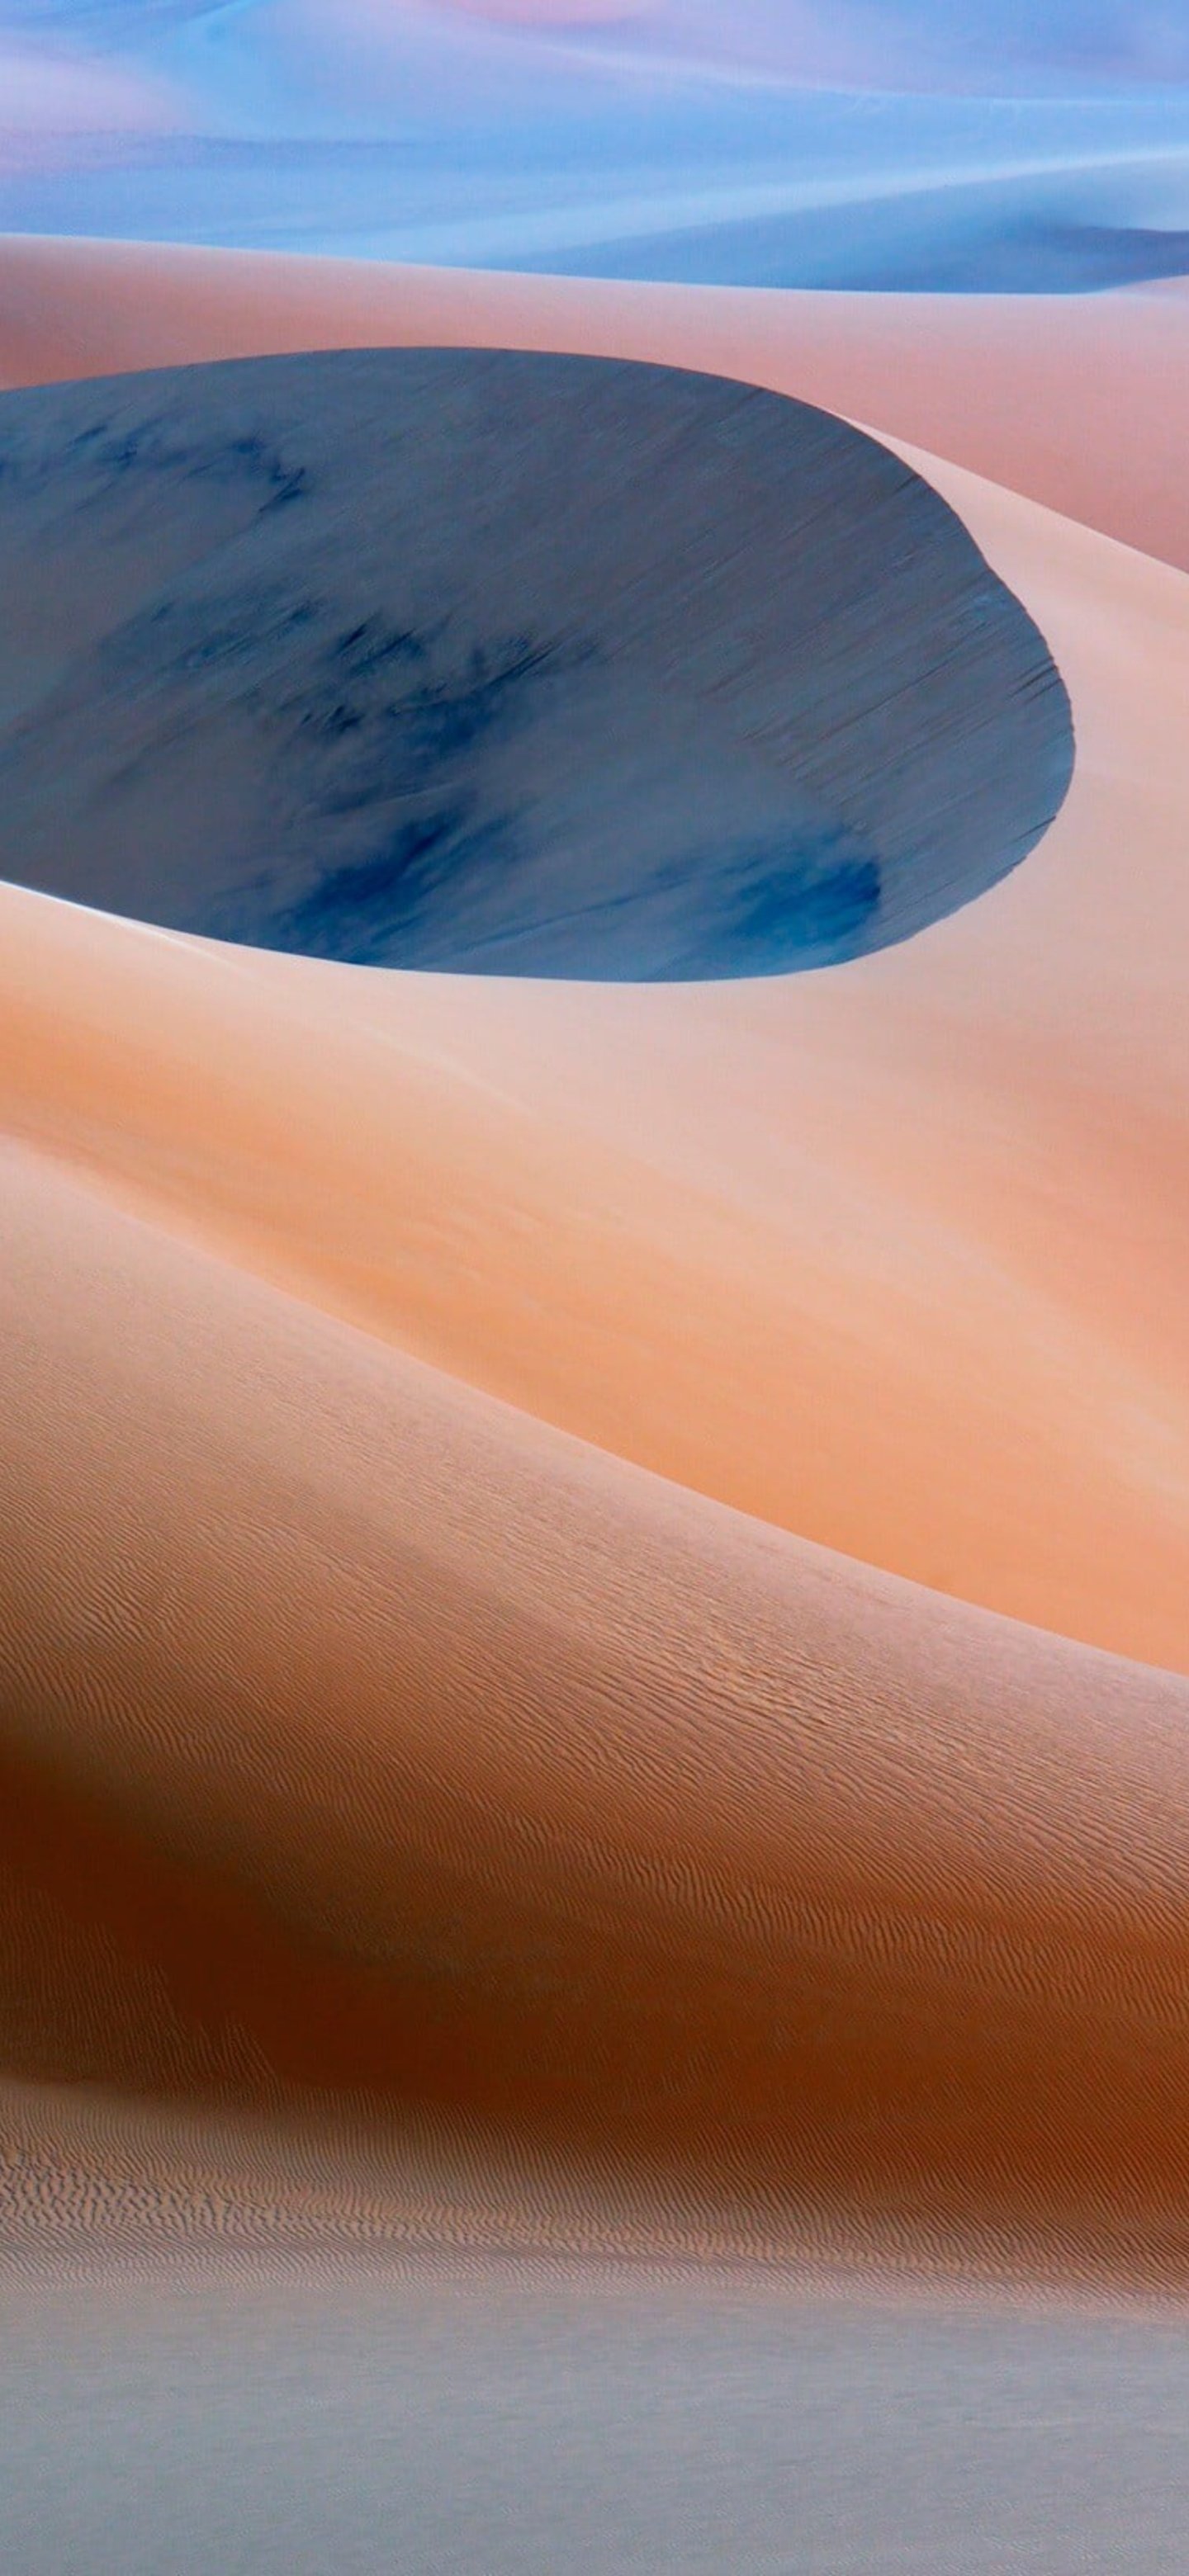 Fondos de pantalla de dunas con cielo claro